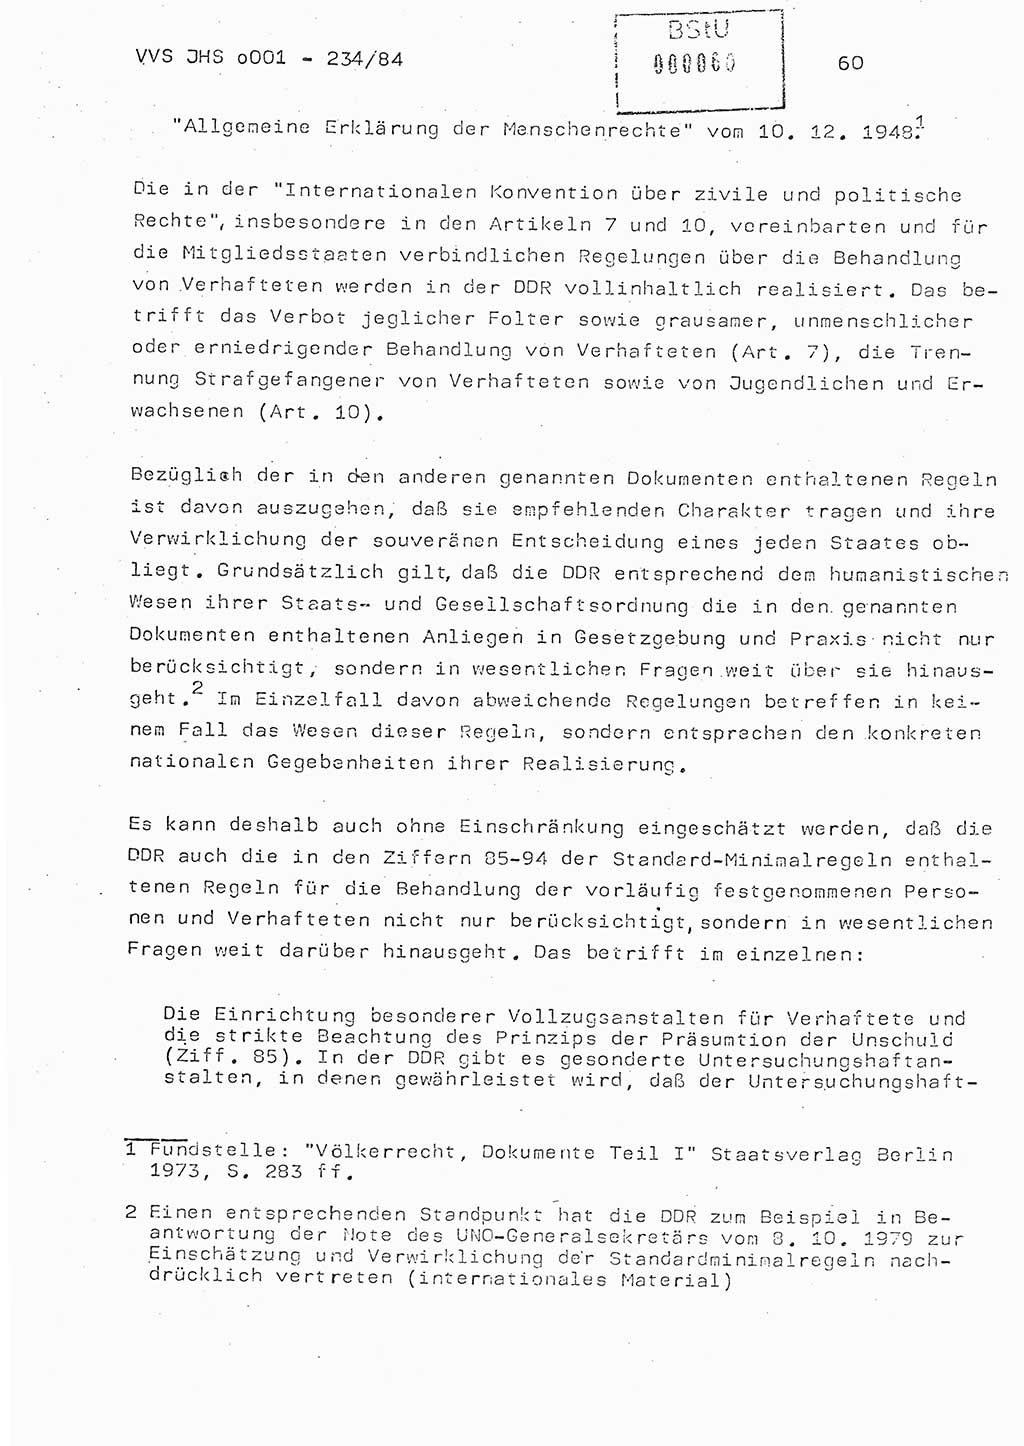 Dissertation Oberst Siegfried Rataizick (Abt. ⅩⅣ), Oberstleutnant Volkmar Heinz (Abt. ⅩⅣ), Oberstleutnant Werner Stein (HA Ⅸ), Hauptmann Heinz Conrad (JHS), Ministerium für Staatssicherheit (MfS) [Deutsche Demokratische Republik (DDR)], Juristische Hochschule (JHS), Vertrauliche Verschlußsache (VVS) o001-234/84, Potsdam 1984, Seite 60 (Diss. MfS DDR JHS VVS o001-234/84 1984, S. 60)